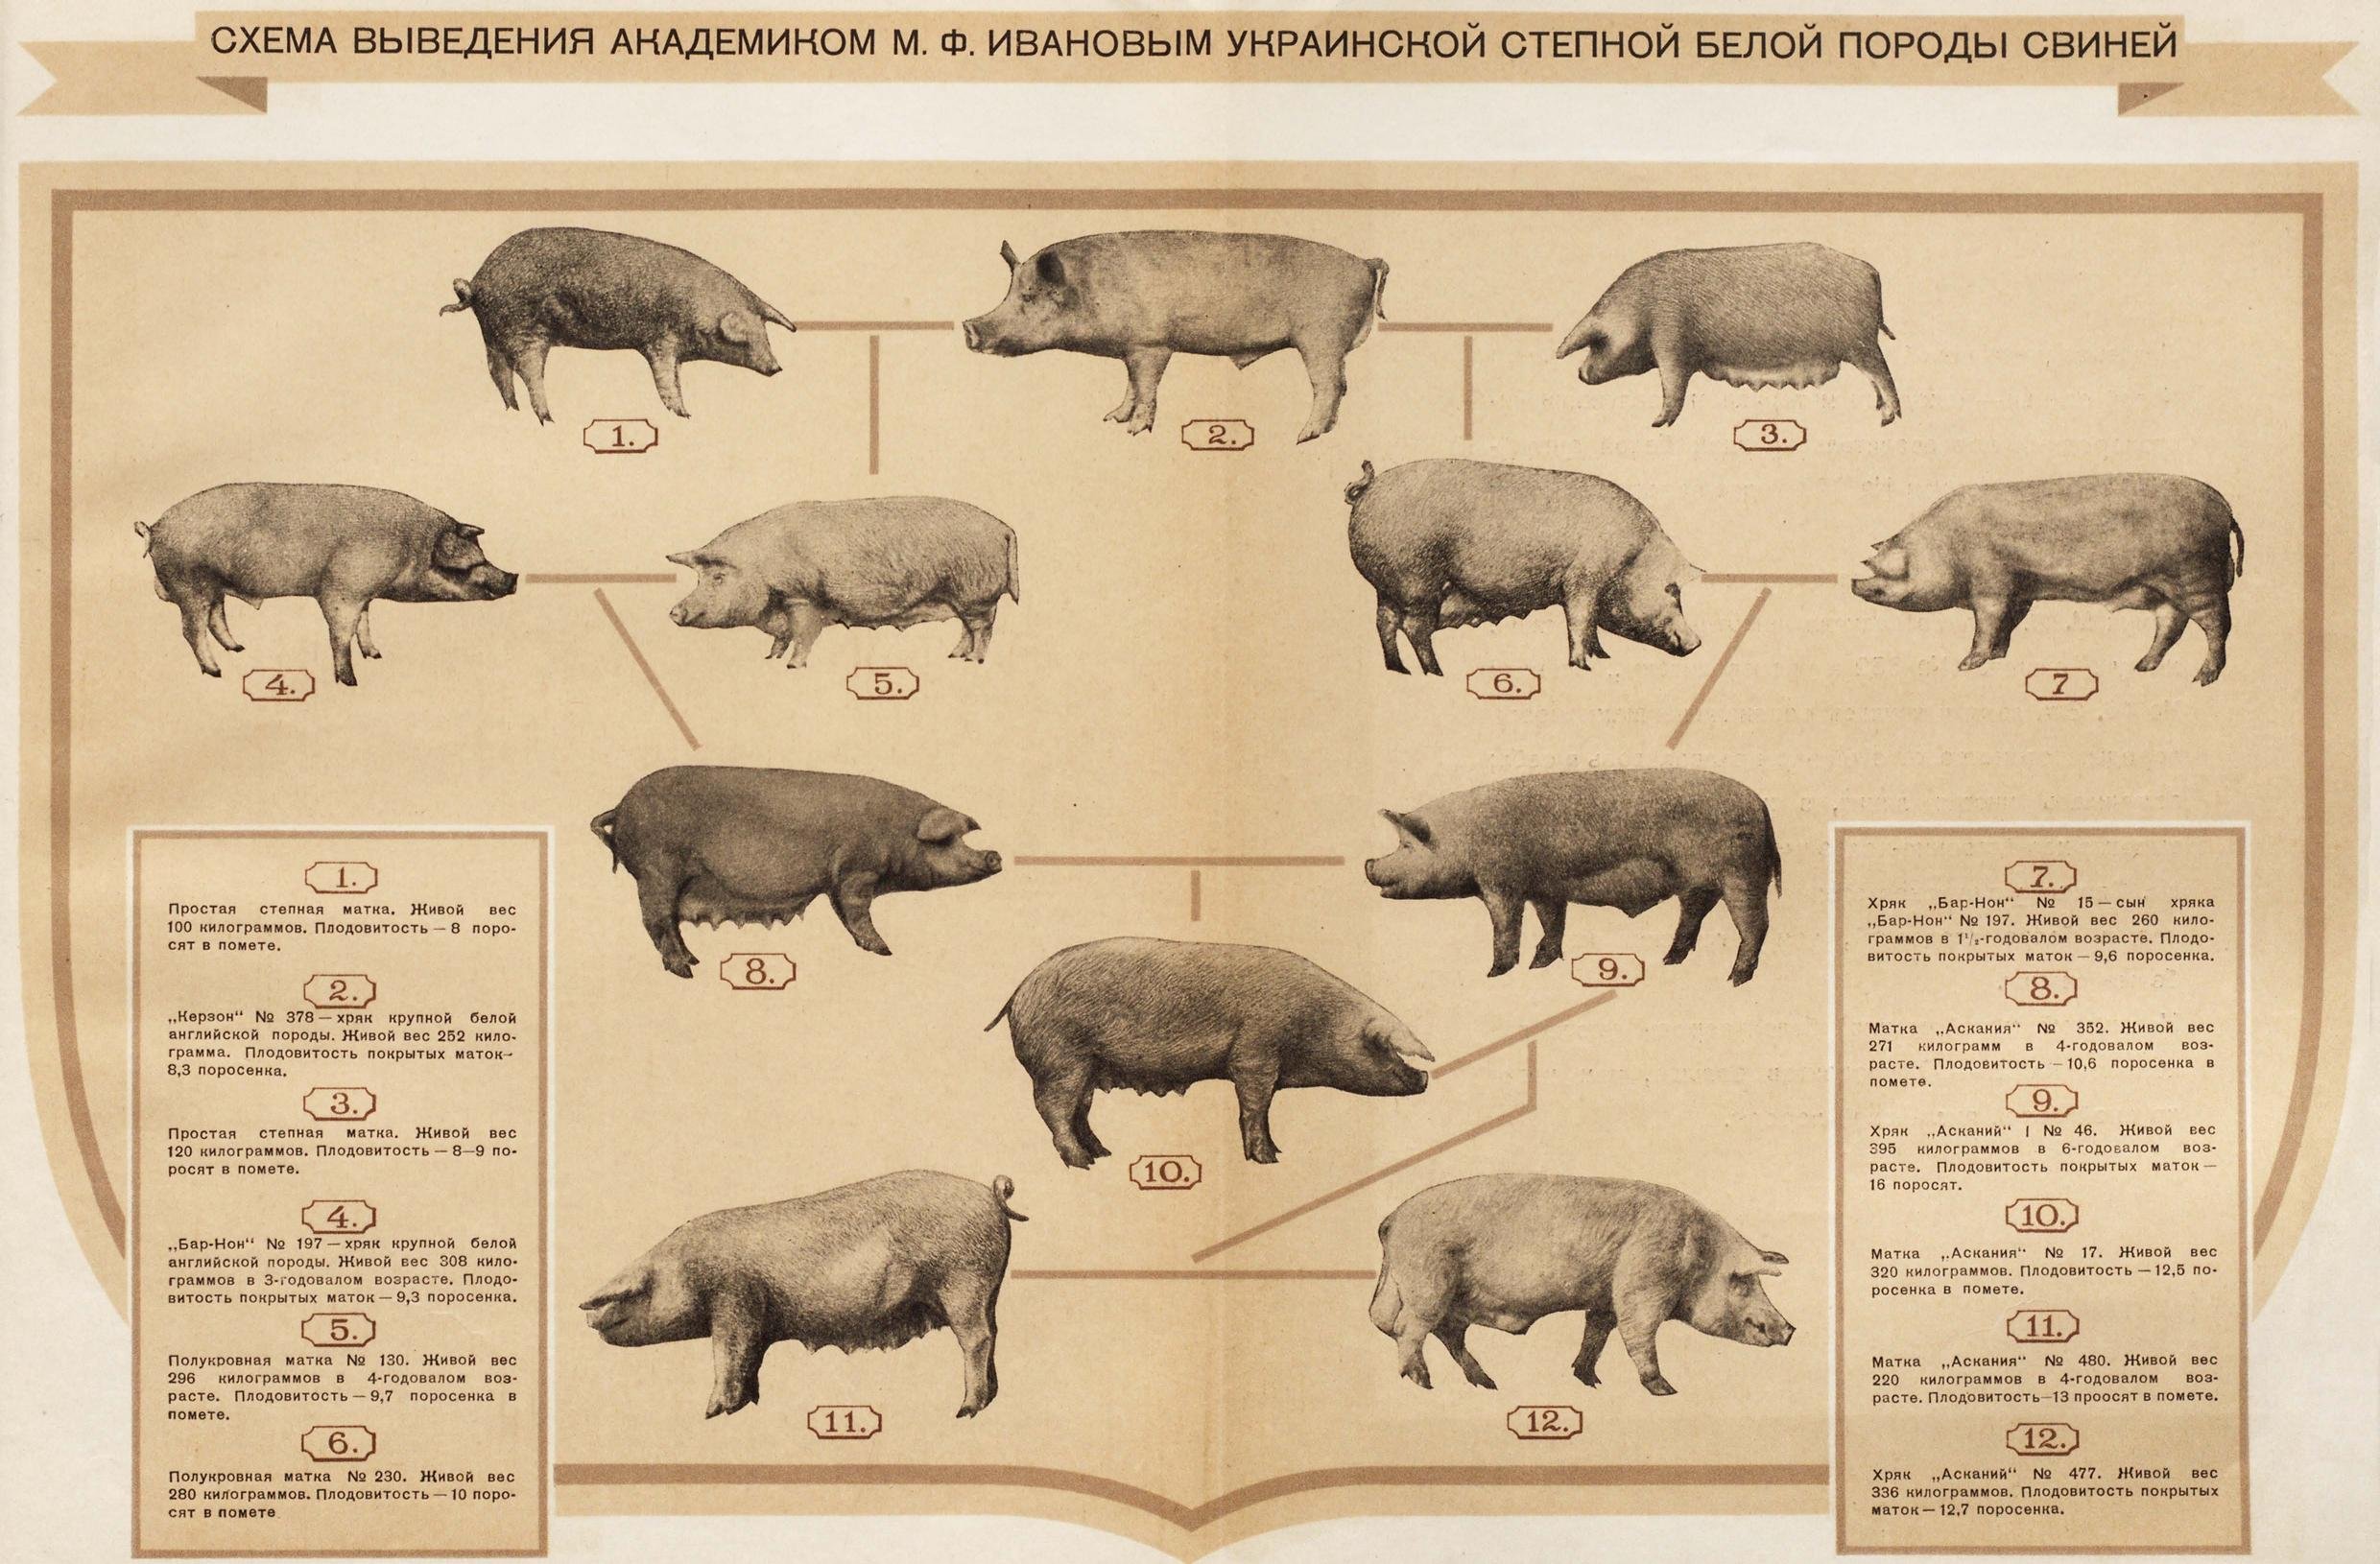 Уровень свиньи. Схема выведения украинской Степной белой породы свиней. Украинская Степная белая порода свиней. Выведение украинской Степной белой породы свиней. Схема пород свиней.